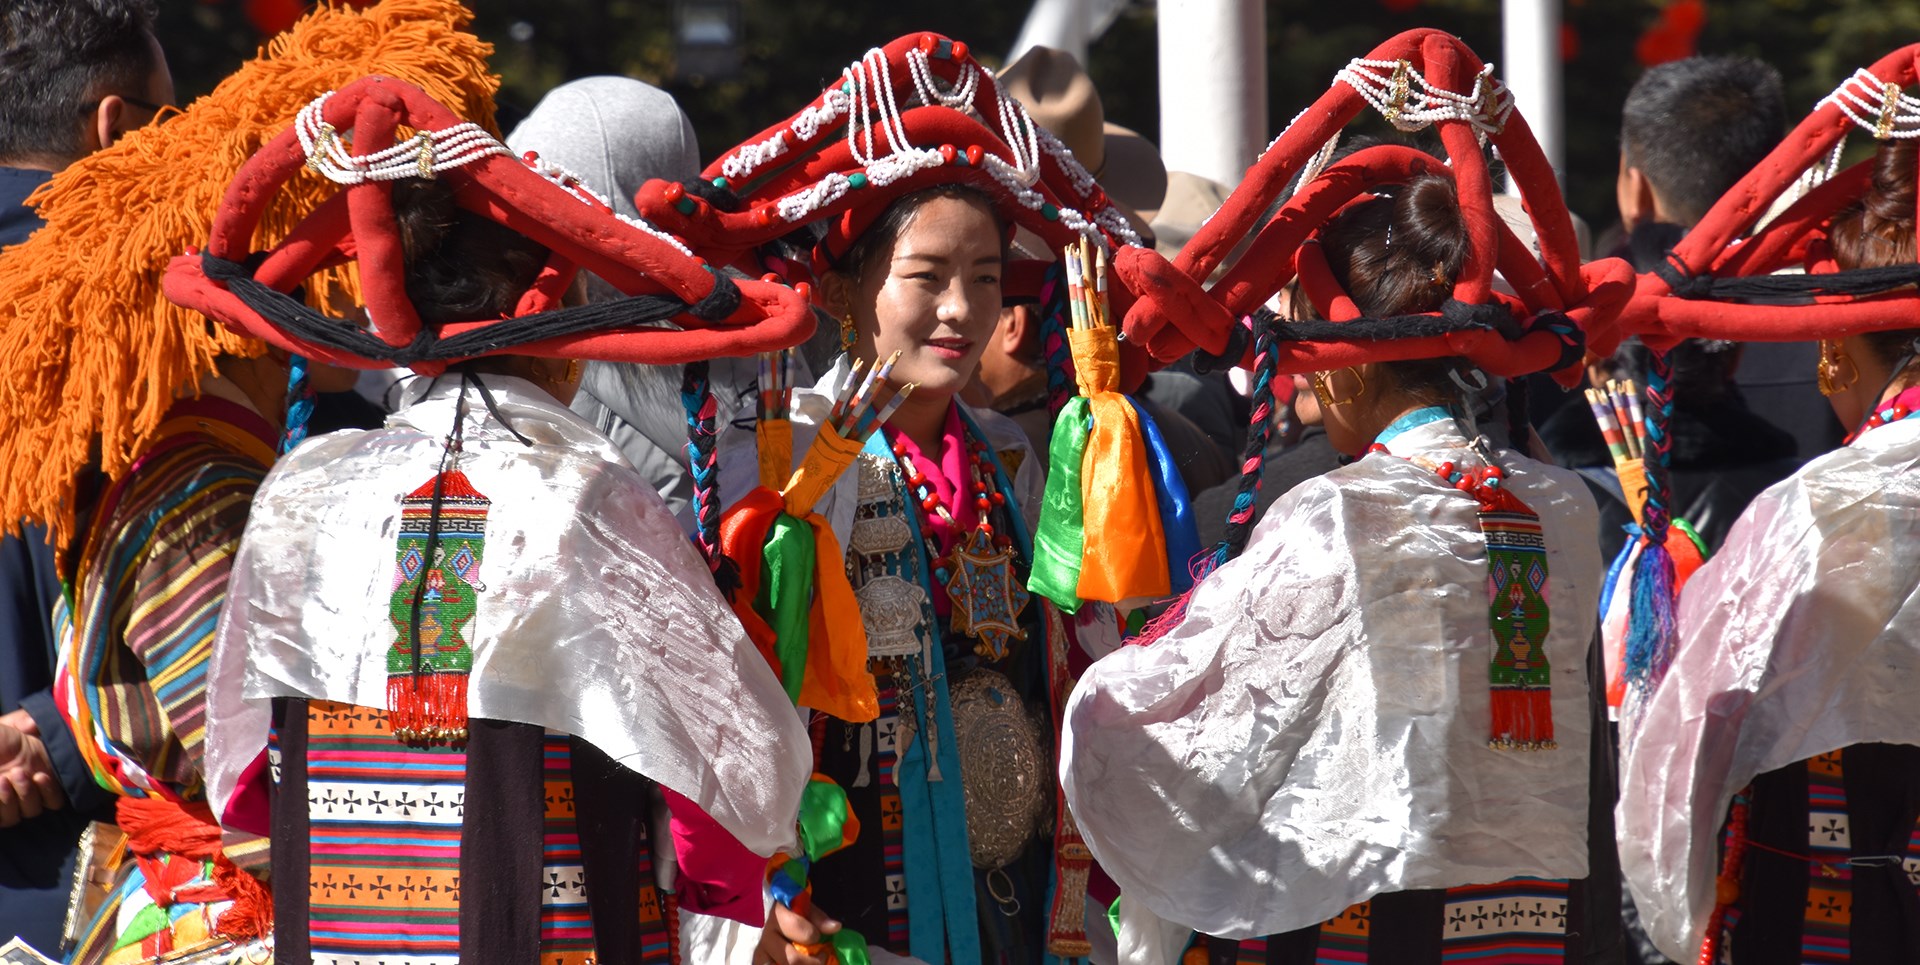 Erlebnisreise zum Tibetischen Neujahrsfest 2021 in Lhasa